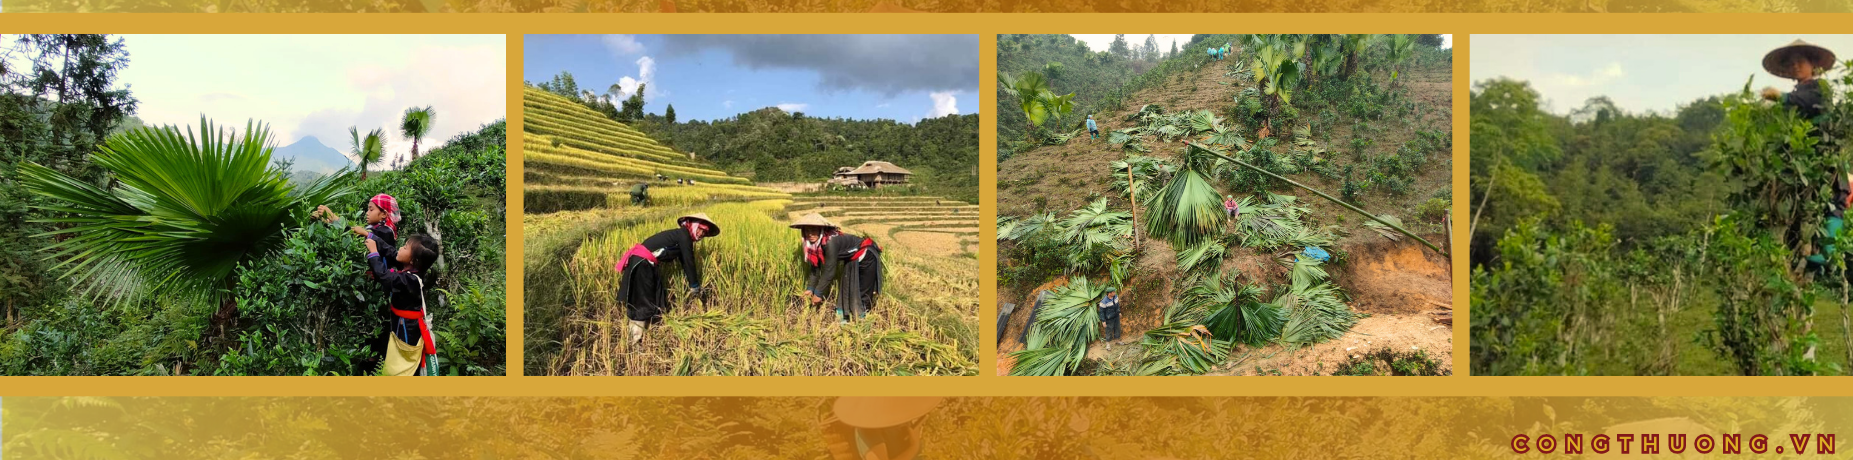 Longform | Phụ nữ Tày miền Bắc Hà- Lào Cai: Giữ nghề xưa và phát triển kinh tế từ vành nón lá cọ